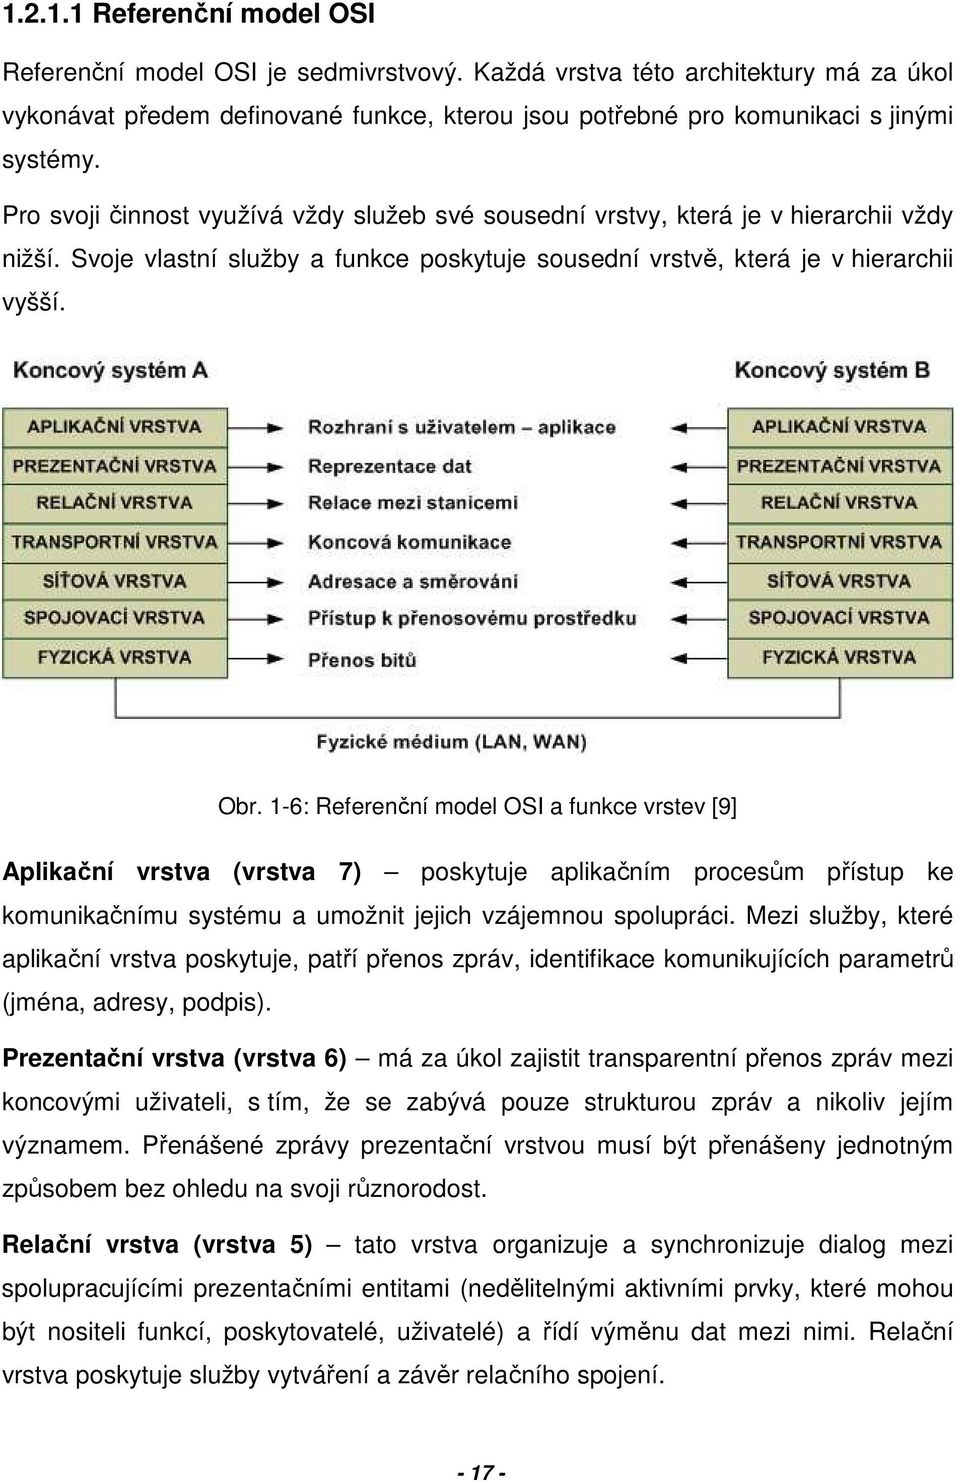 1-6: Referenční model OSI a funkce vrstev [9] Aplikační vrstva (vrstva 7) poskytuje aplikačním procesům přístup ke komunikačnímu systému a umožnit jejich vzájemnou spolupráci.